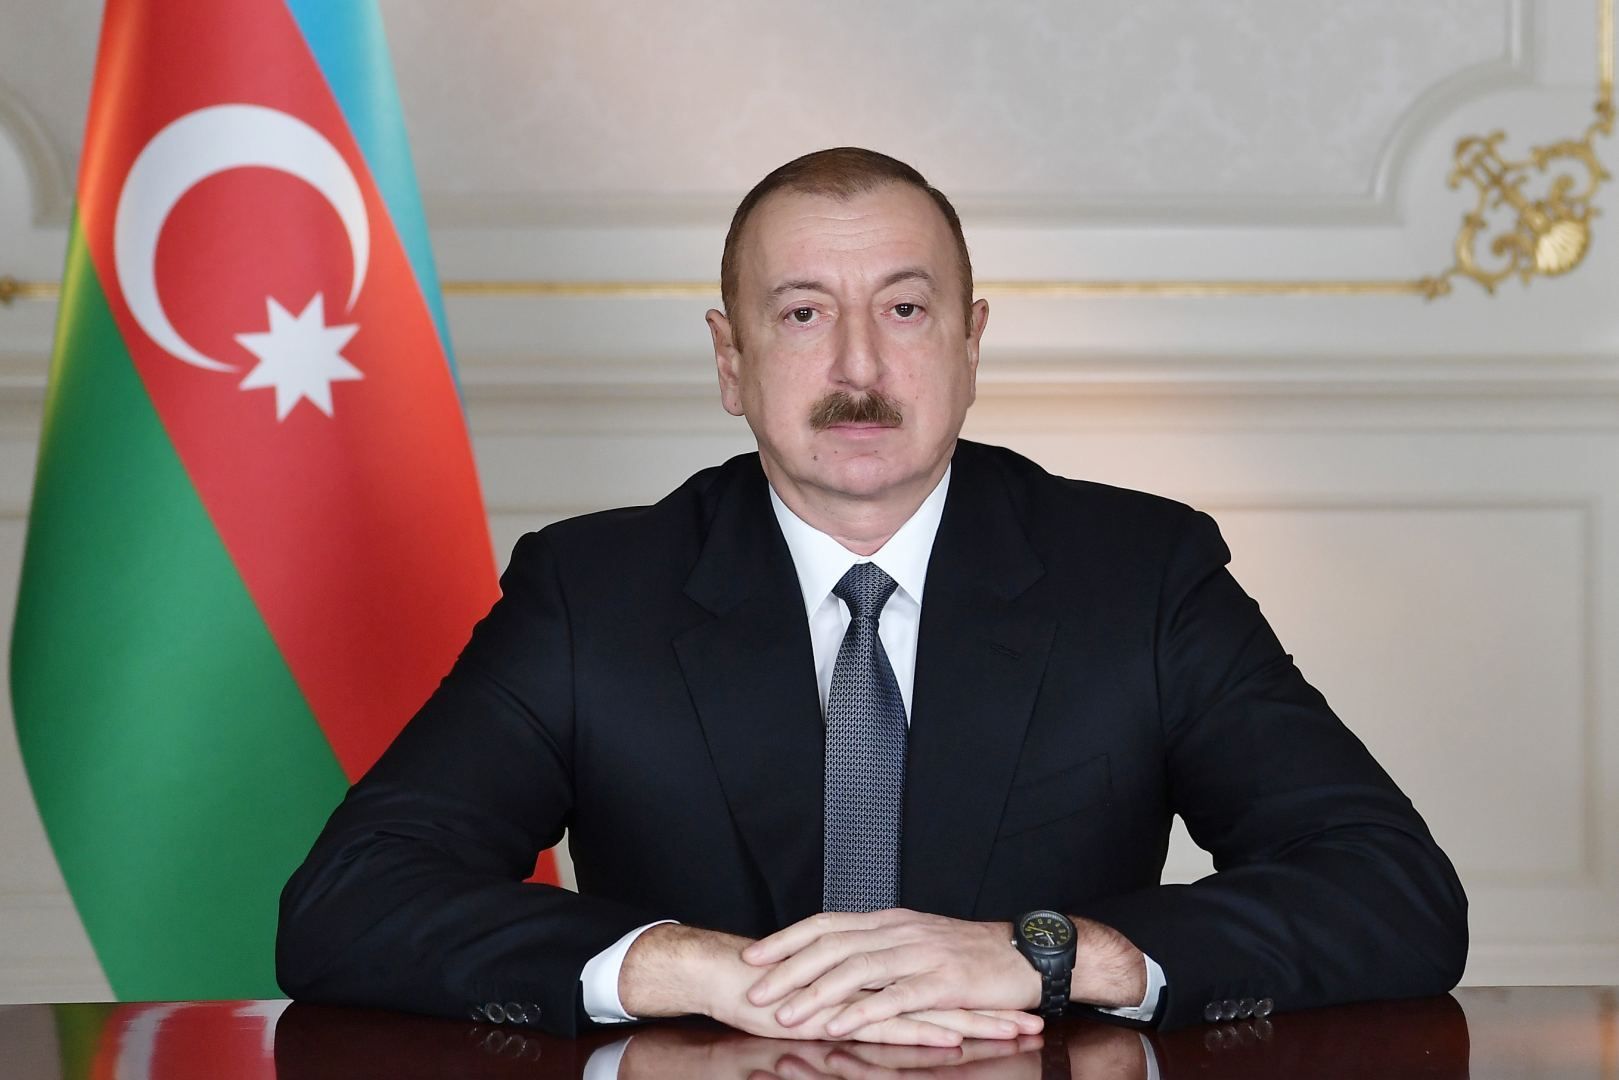 Presidents Ilham Aliyev, President Aleksandr Lukashenko hold joint dinner in Shusha